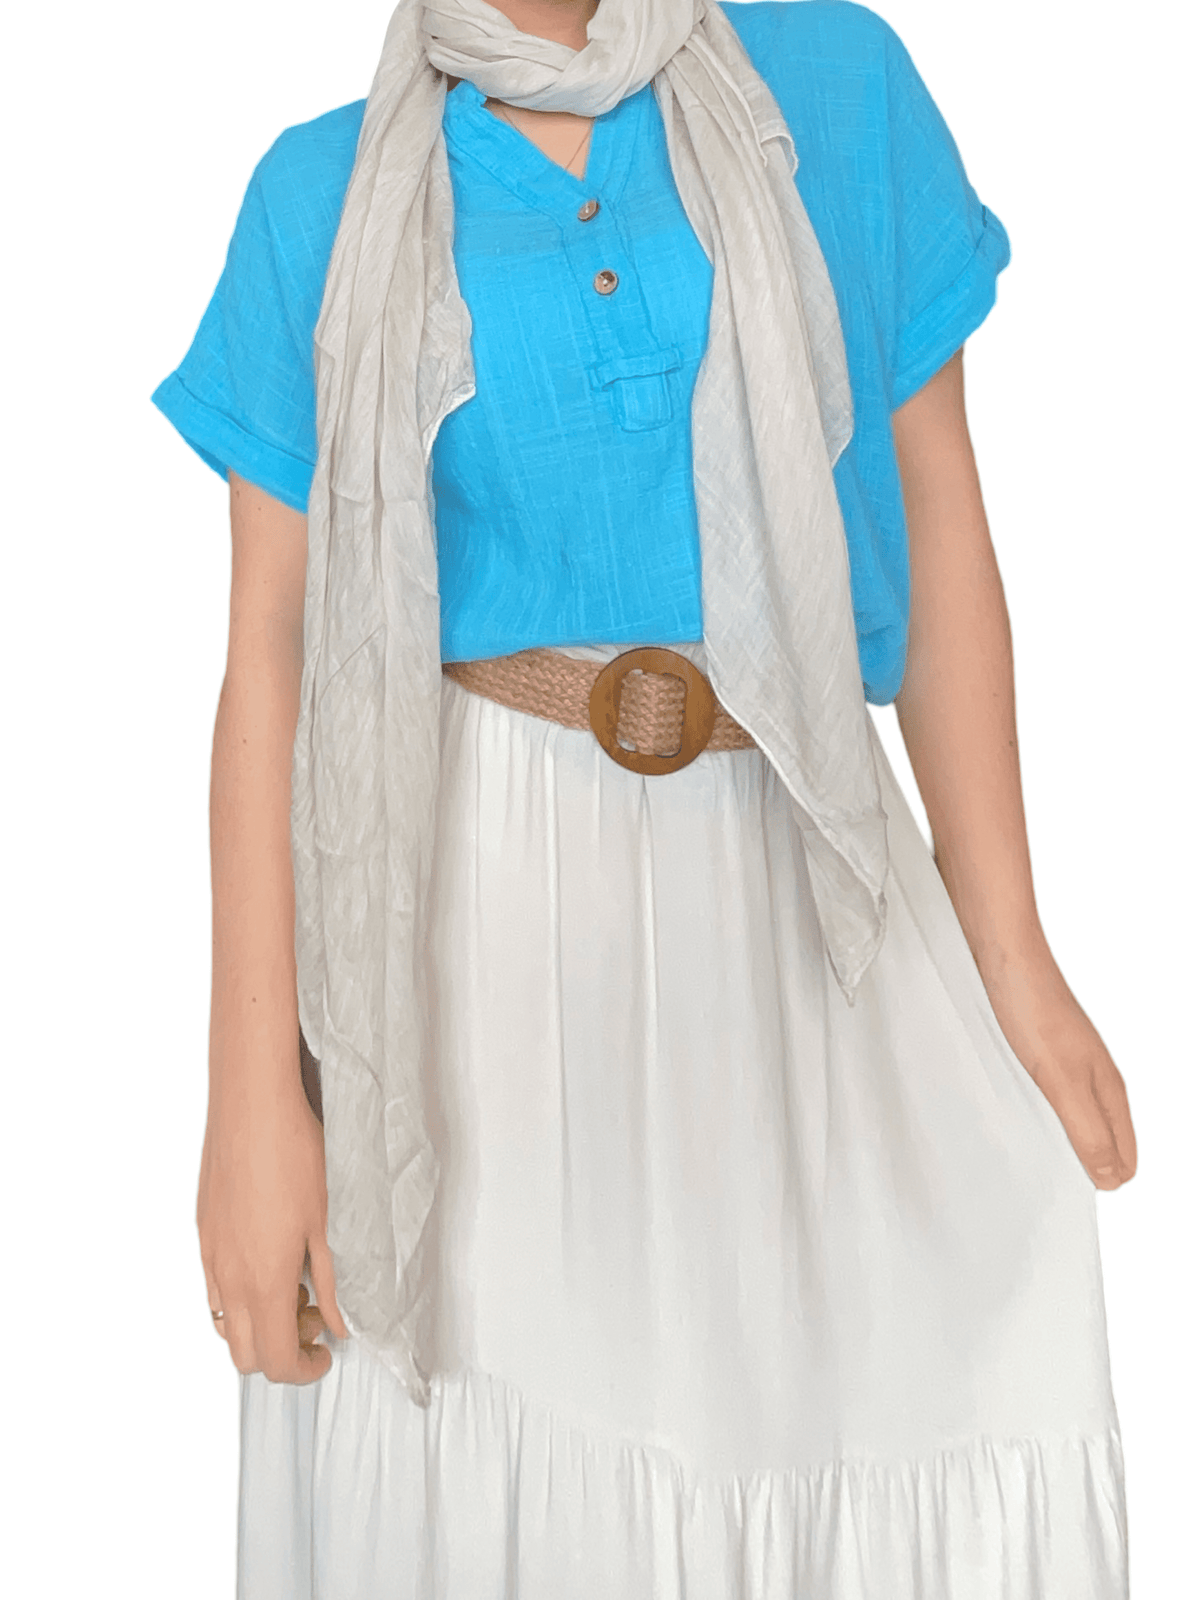 Blouse turquoise unie pour femme avec foulard beige.